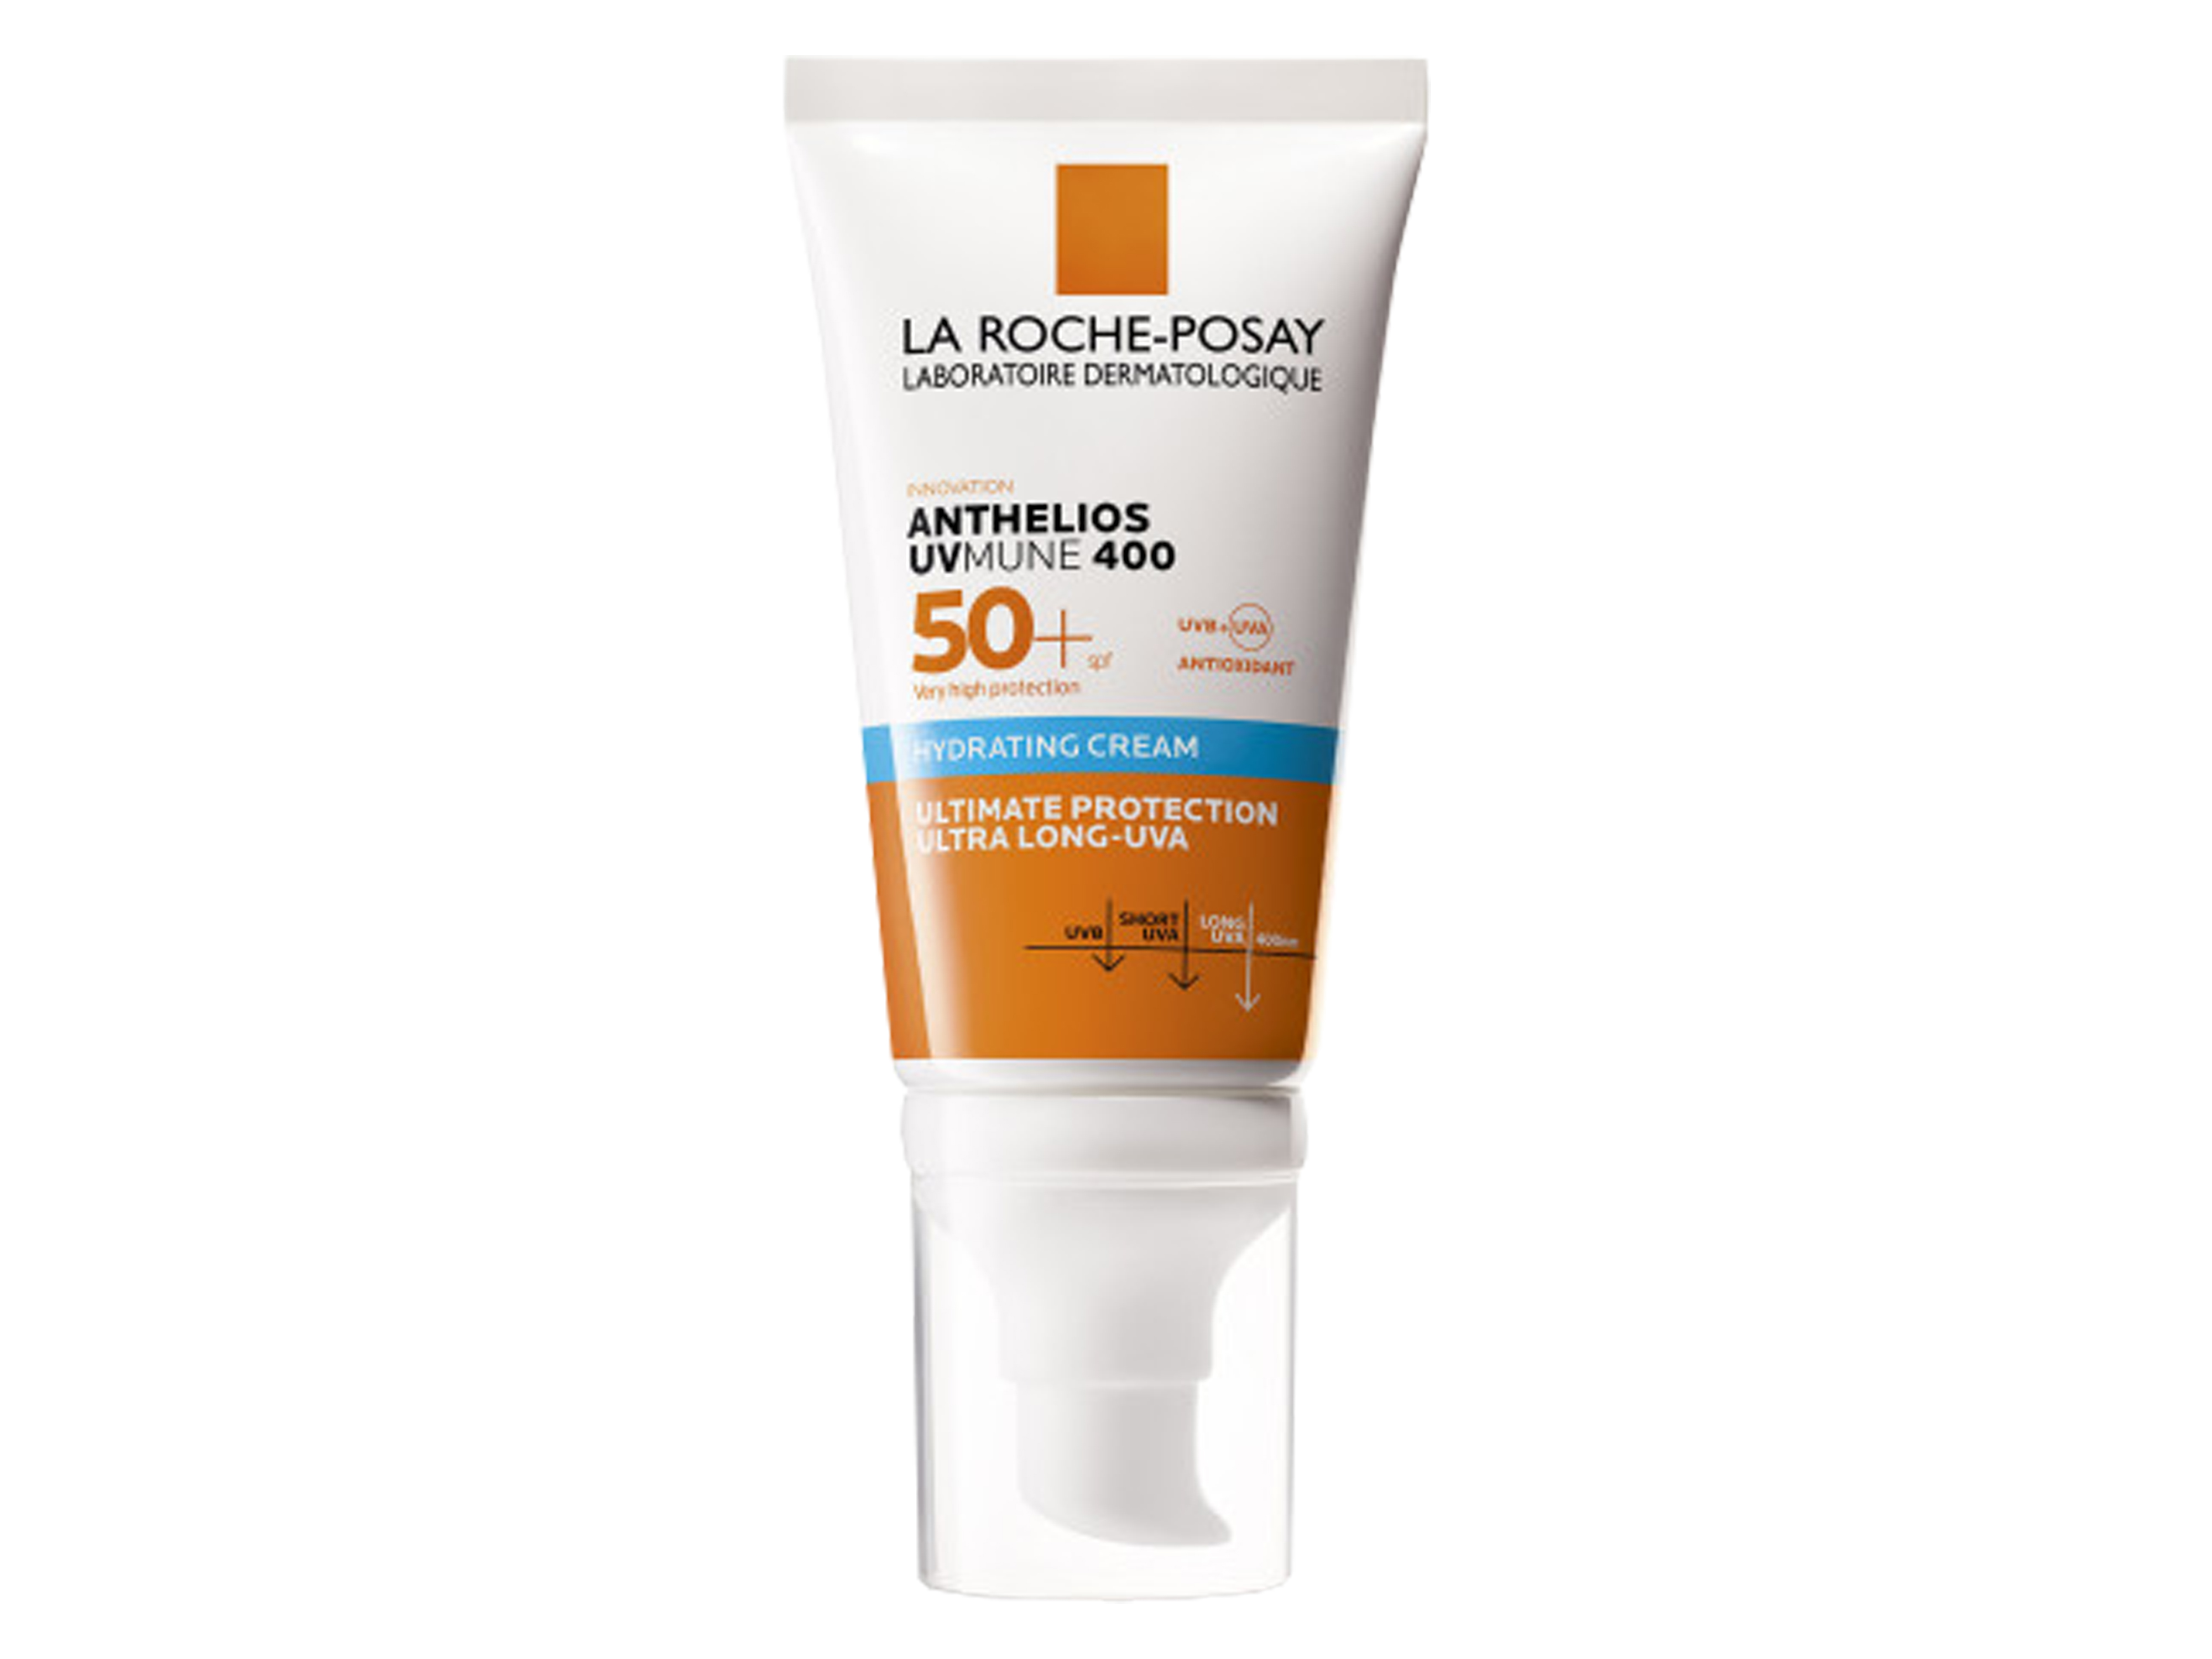 La Roche-Posay Anthelios UVMUNE Ultra Cream, SPF 50+, 50 ml